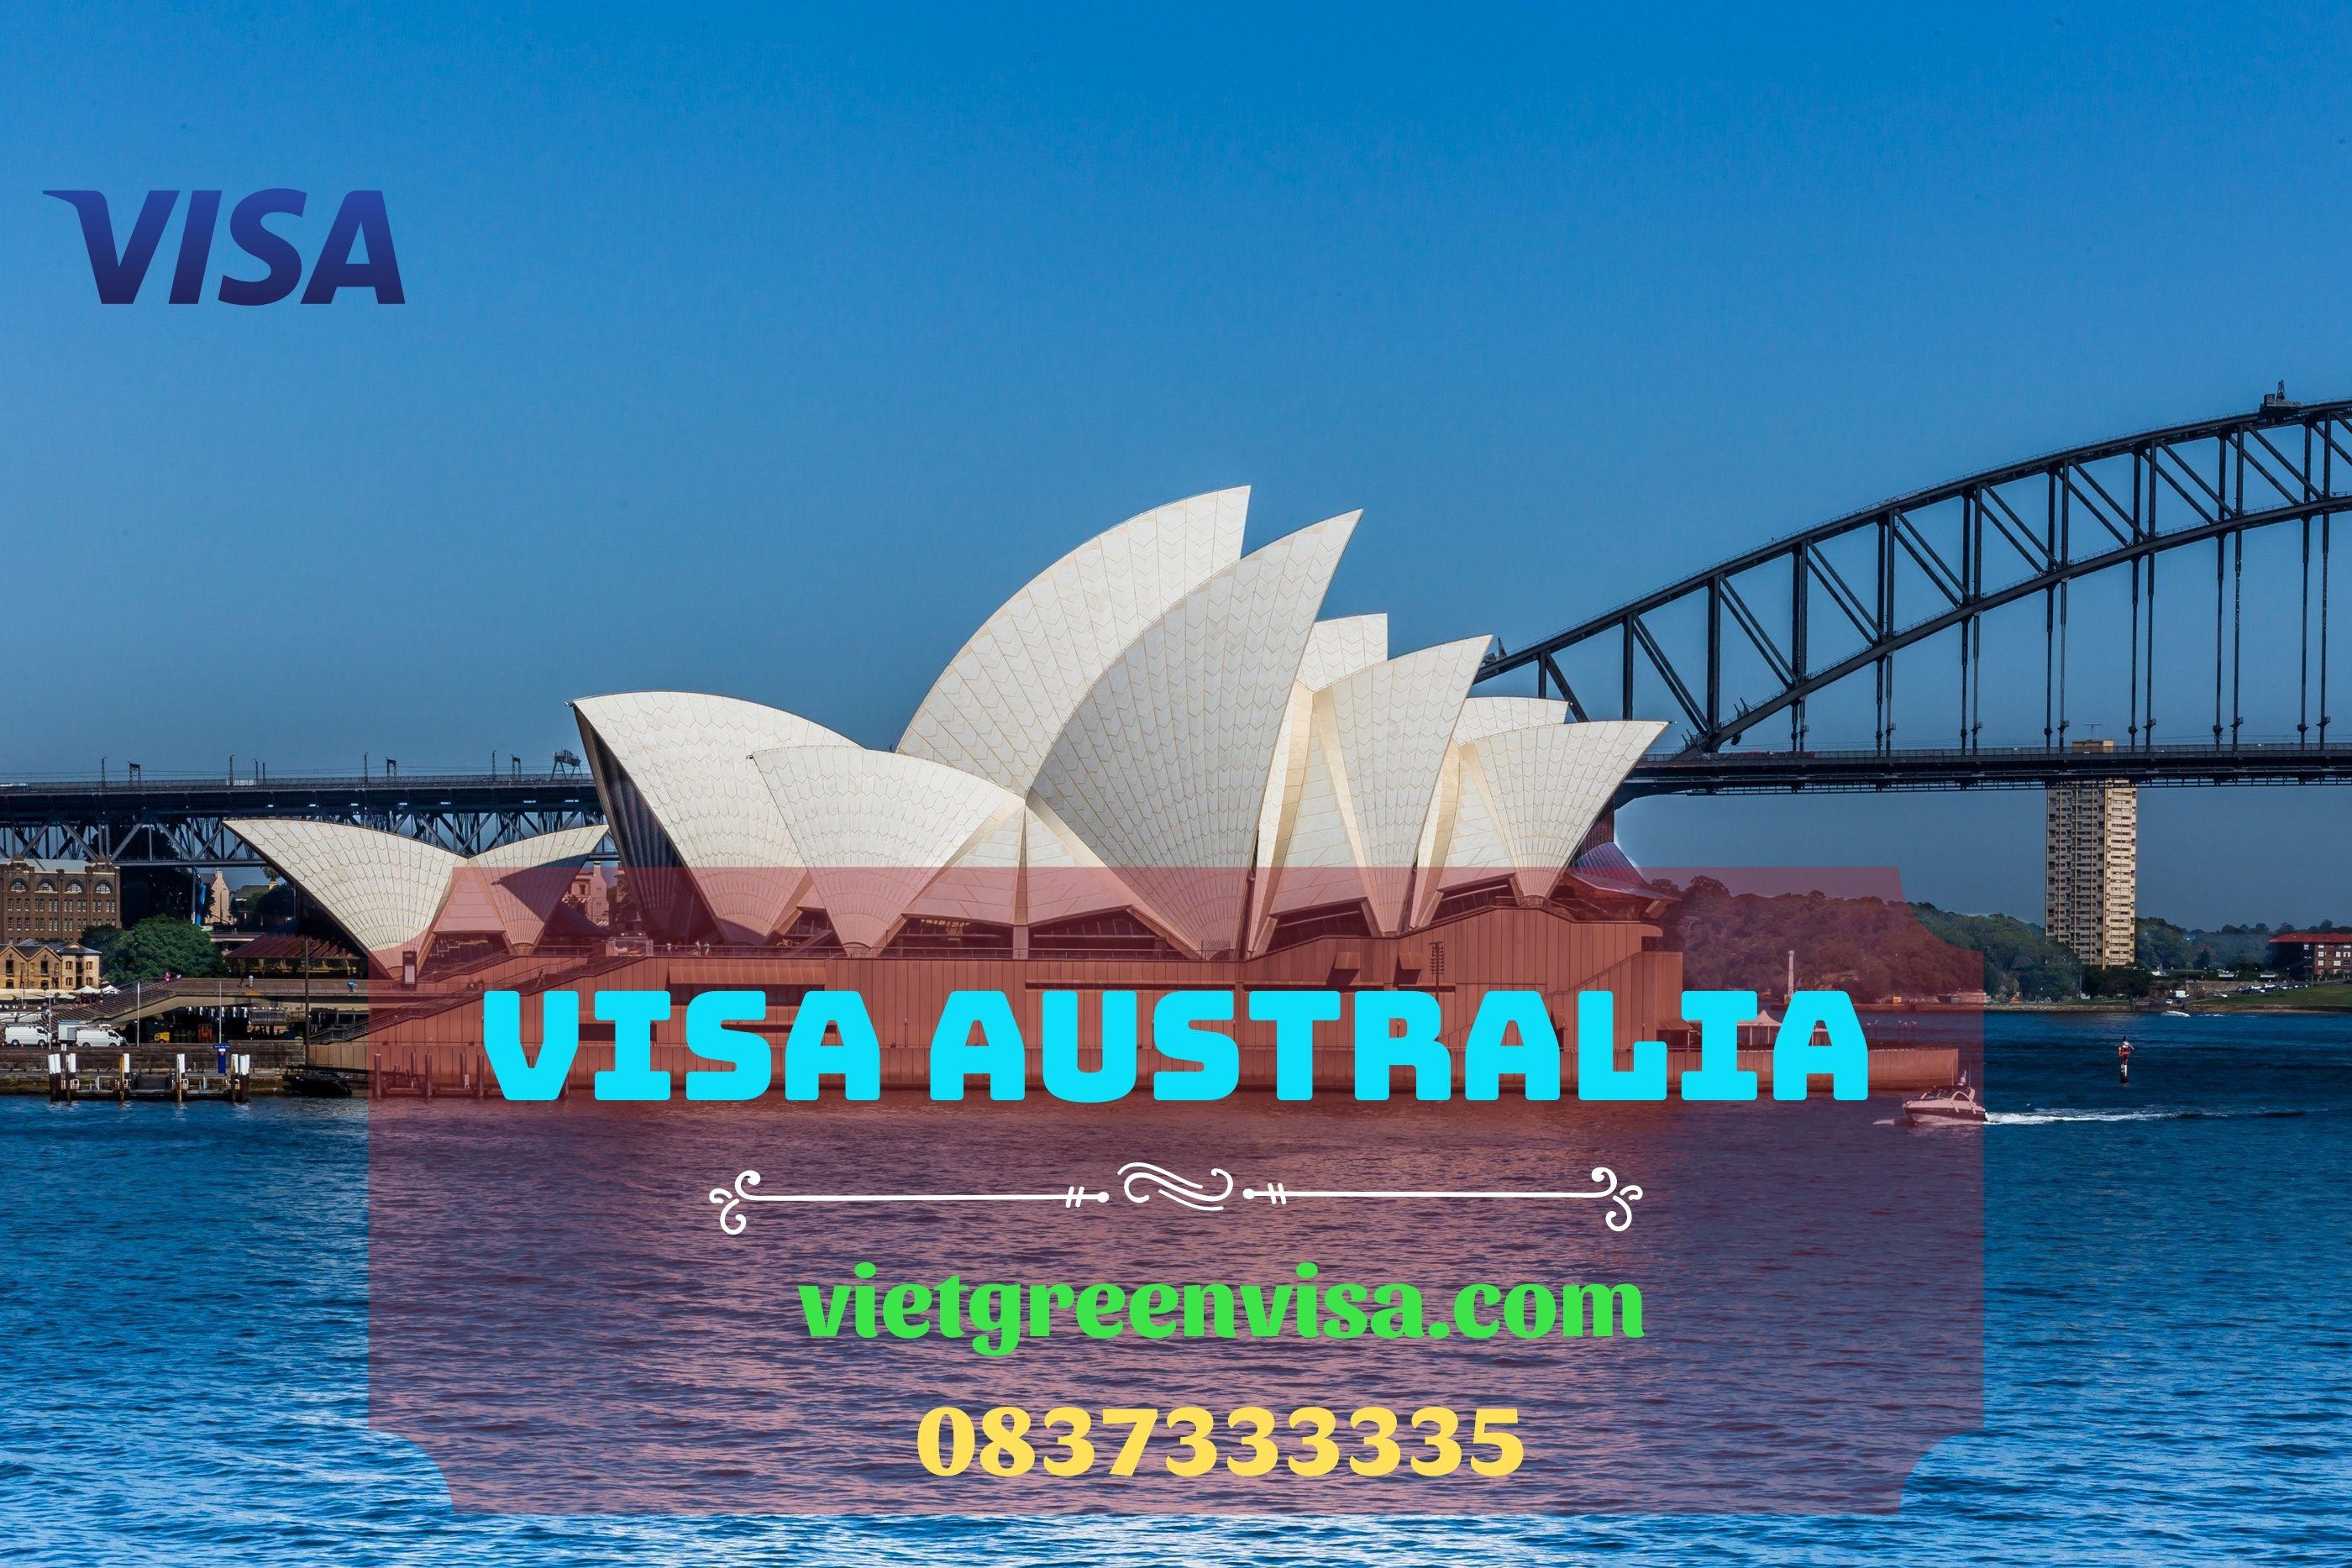 Bỏ túi các bí kíp xin visa Úc nhanh chóng và hiệu quả 